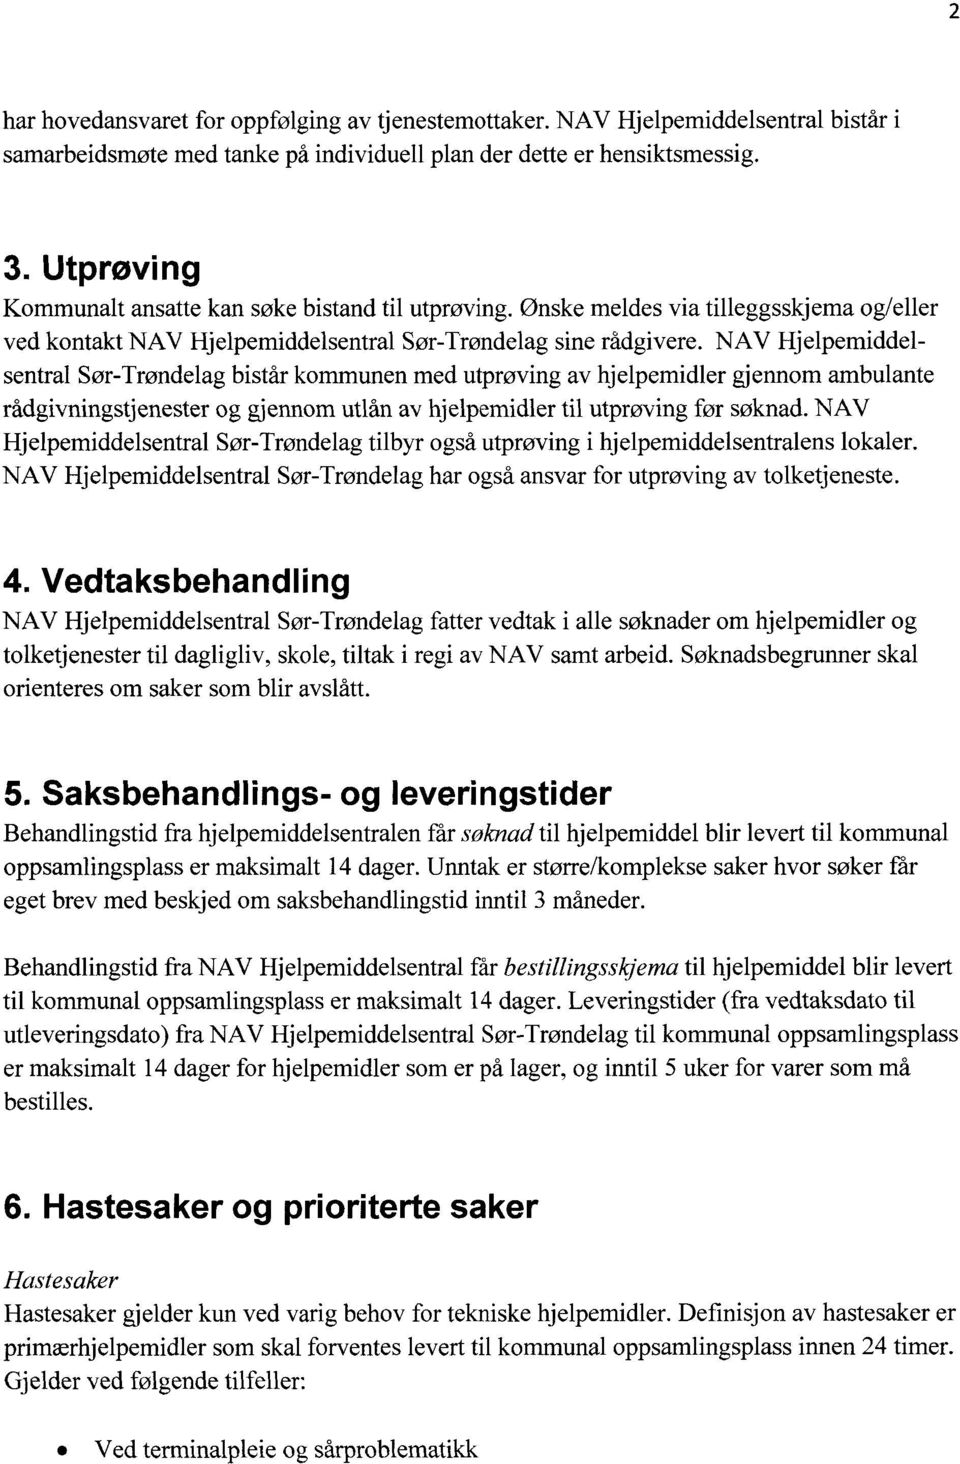 NAV Hjelpemiddelsentral Sør-Trøndelag bistår kommunen med utprøving av hjelpemidler gjennom ambulante rådgivningstjenester og gjennom utlån av hjelpemidler til utprøving før søknad.